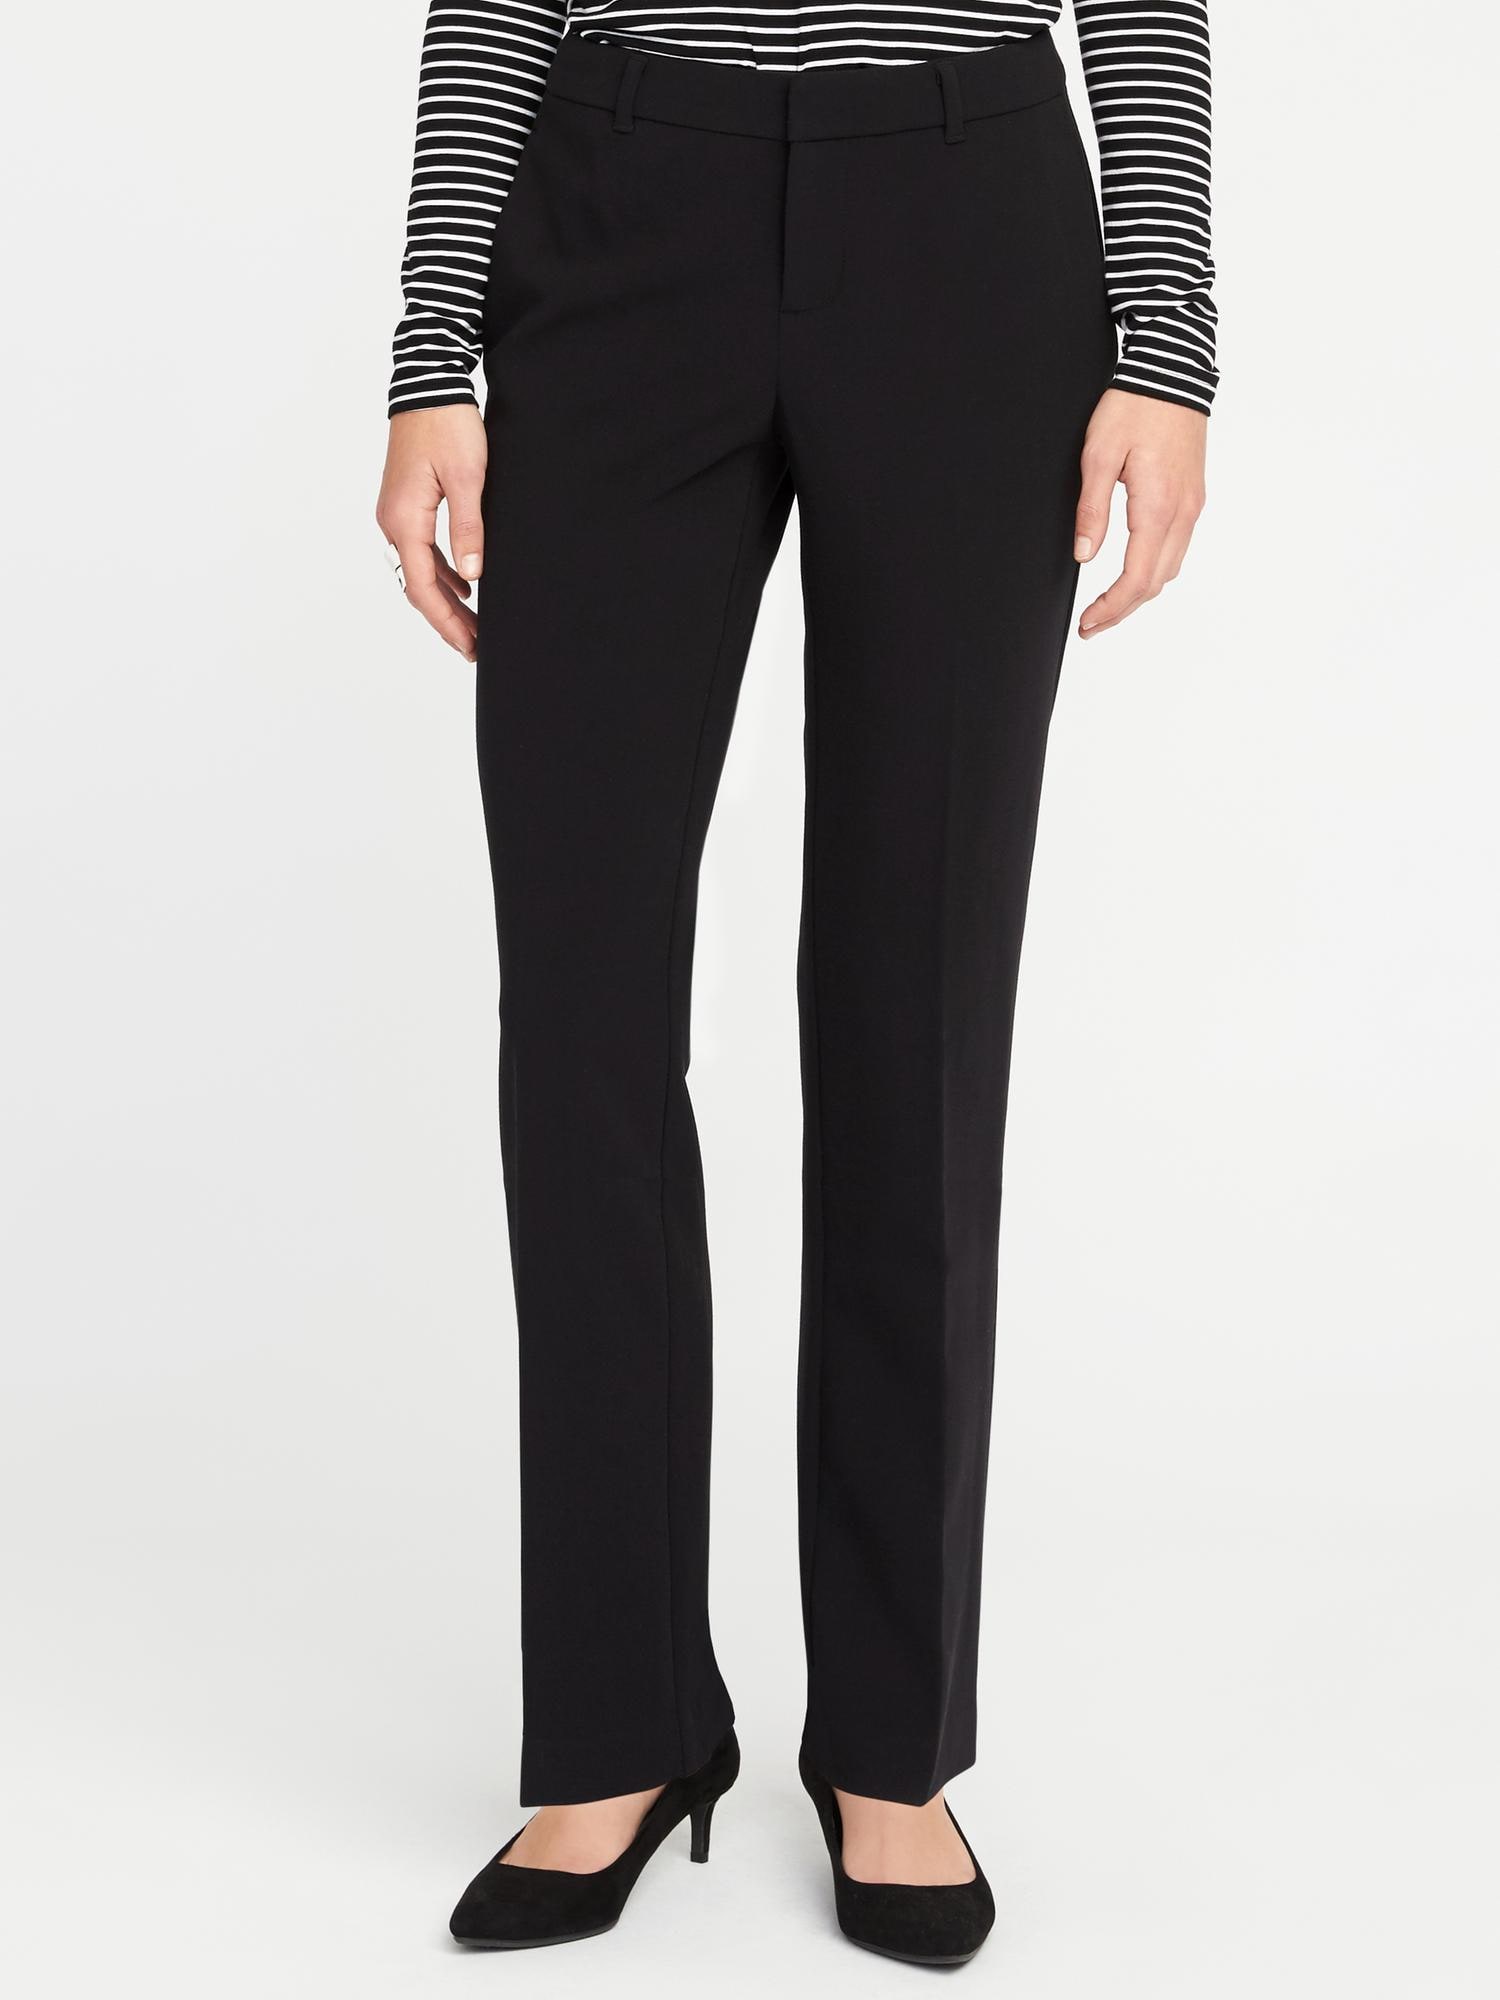 Mid-Rise Harper Full-Length Pants for Women | Old Navy